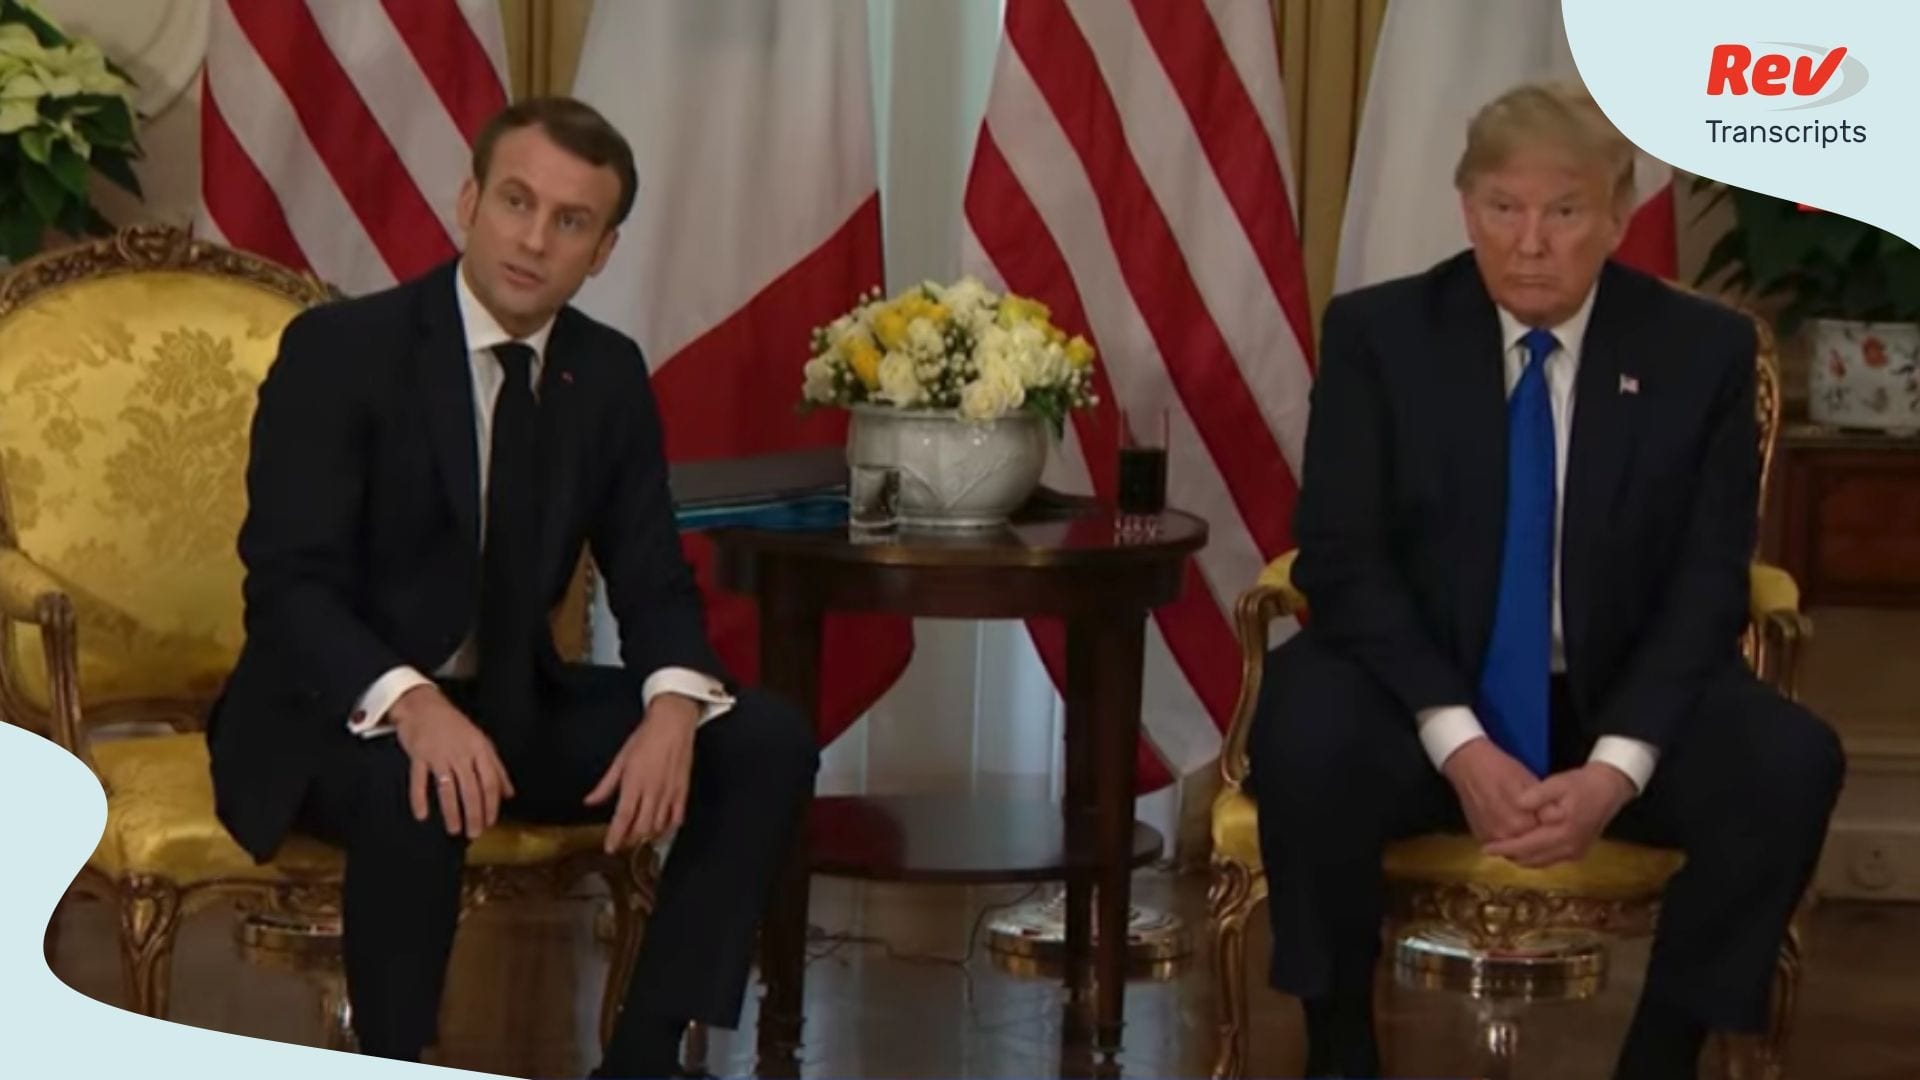 Emmanuel Macron Donald Trump NATO Meeting Transcript